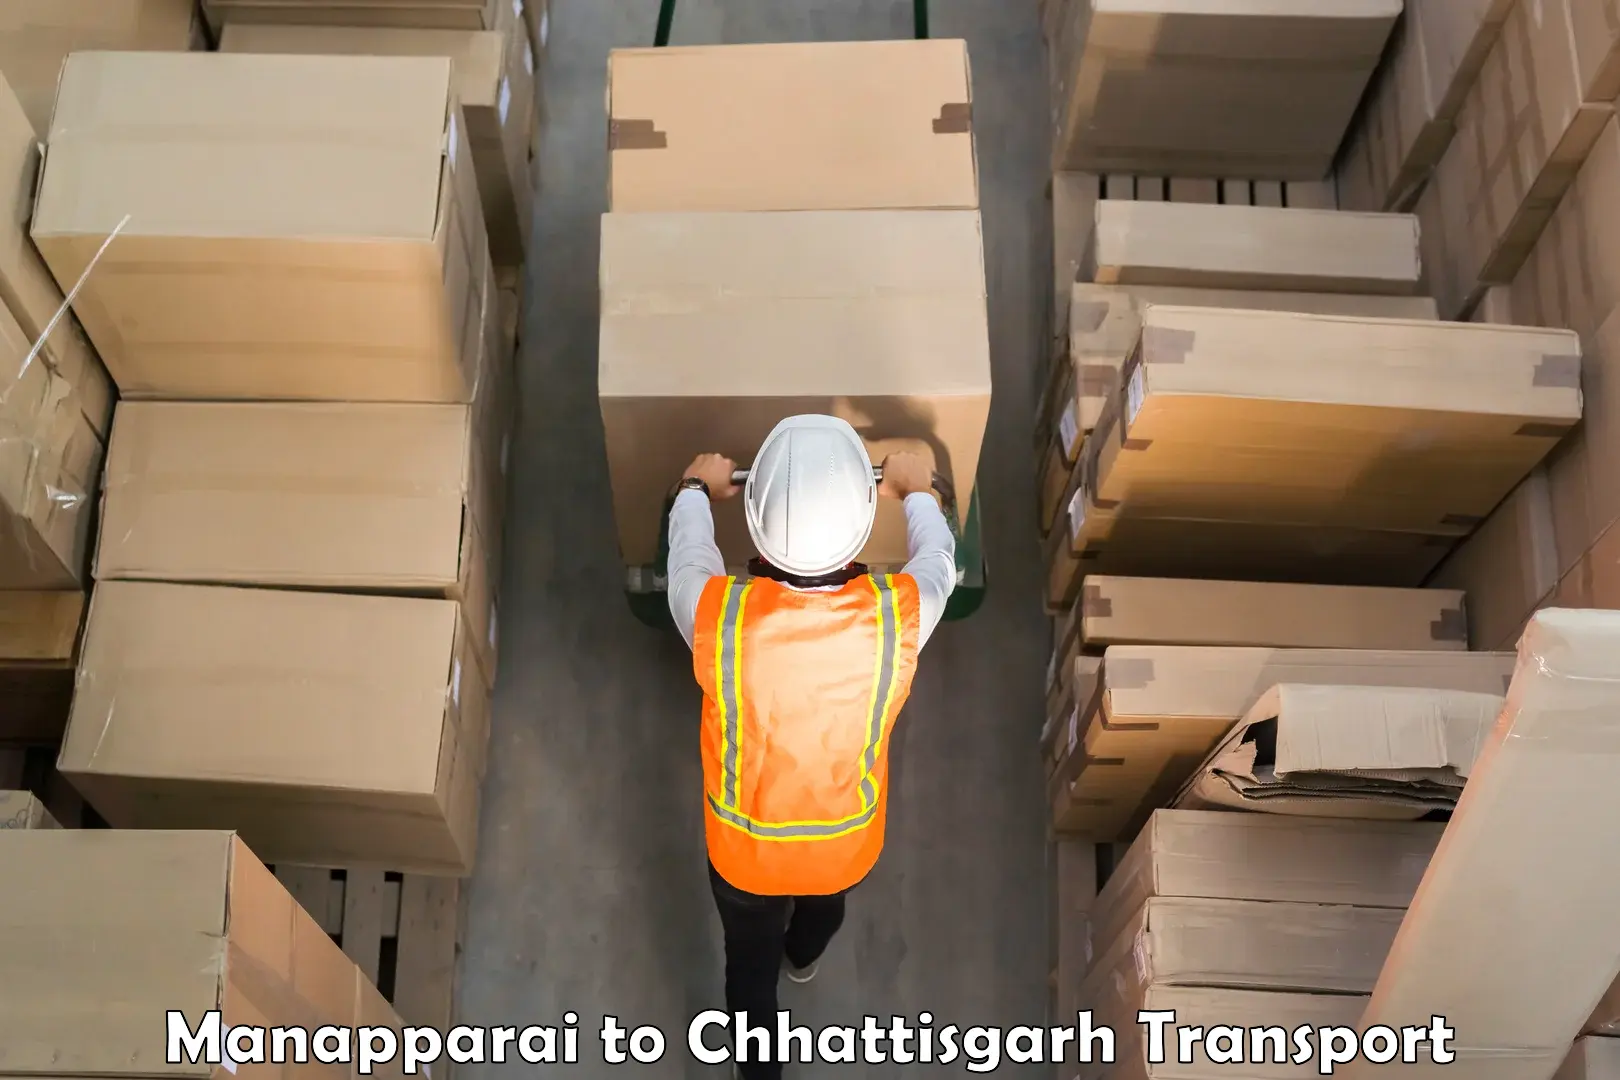 All India transport service Manapparai to Chhattisgarh